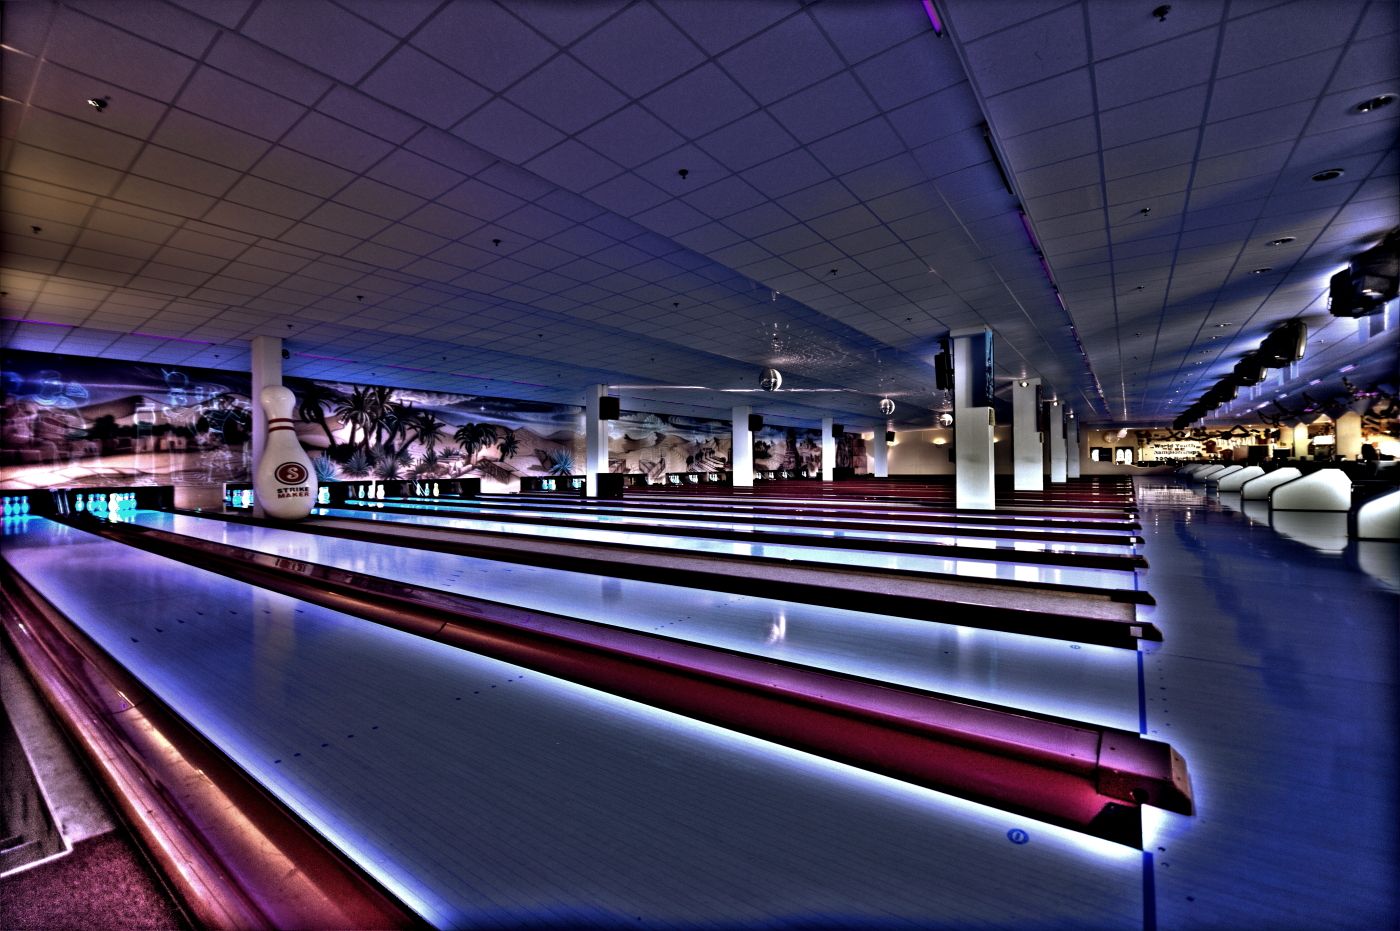 Bowlingcenter Schillerpark